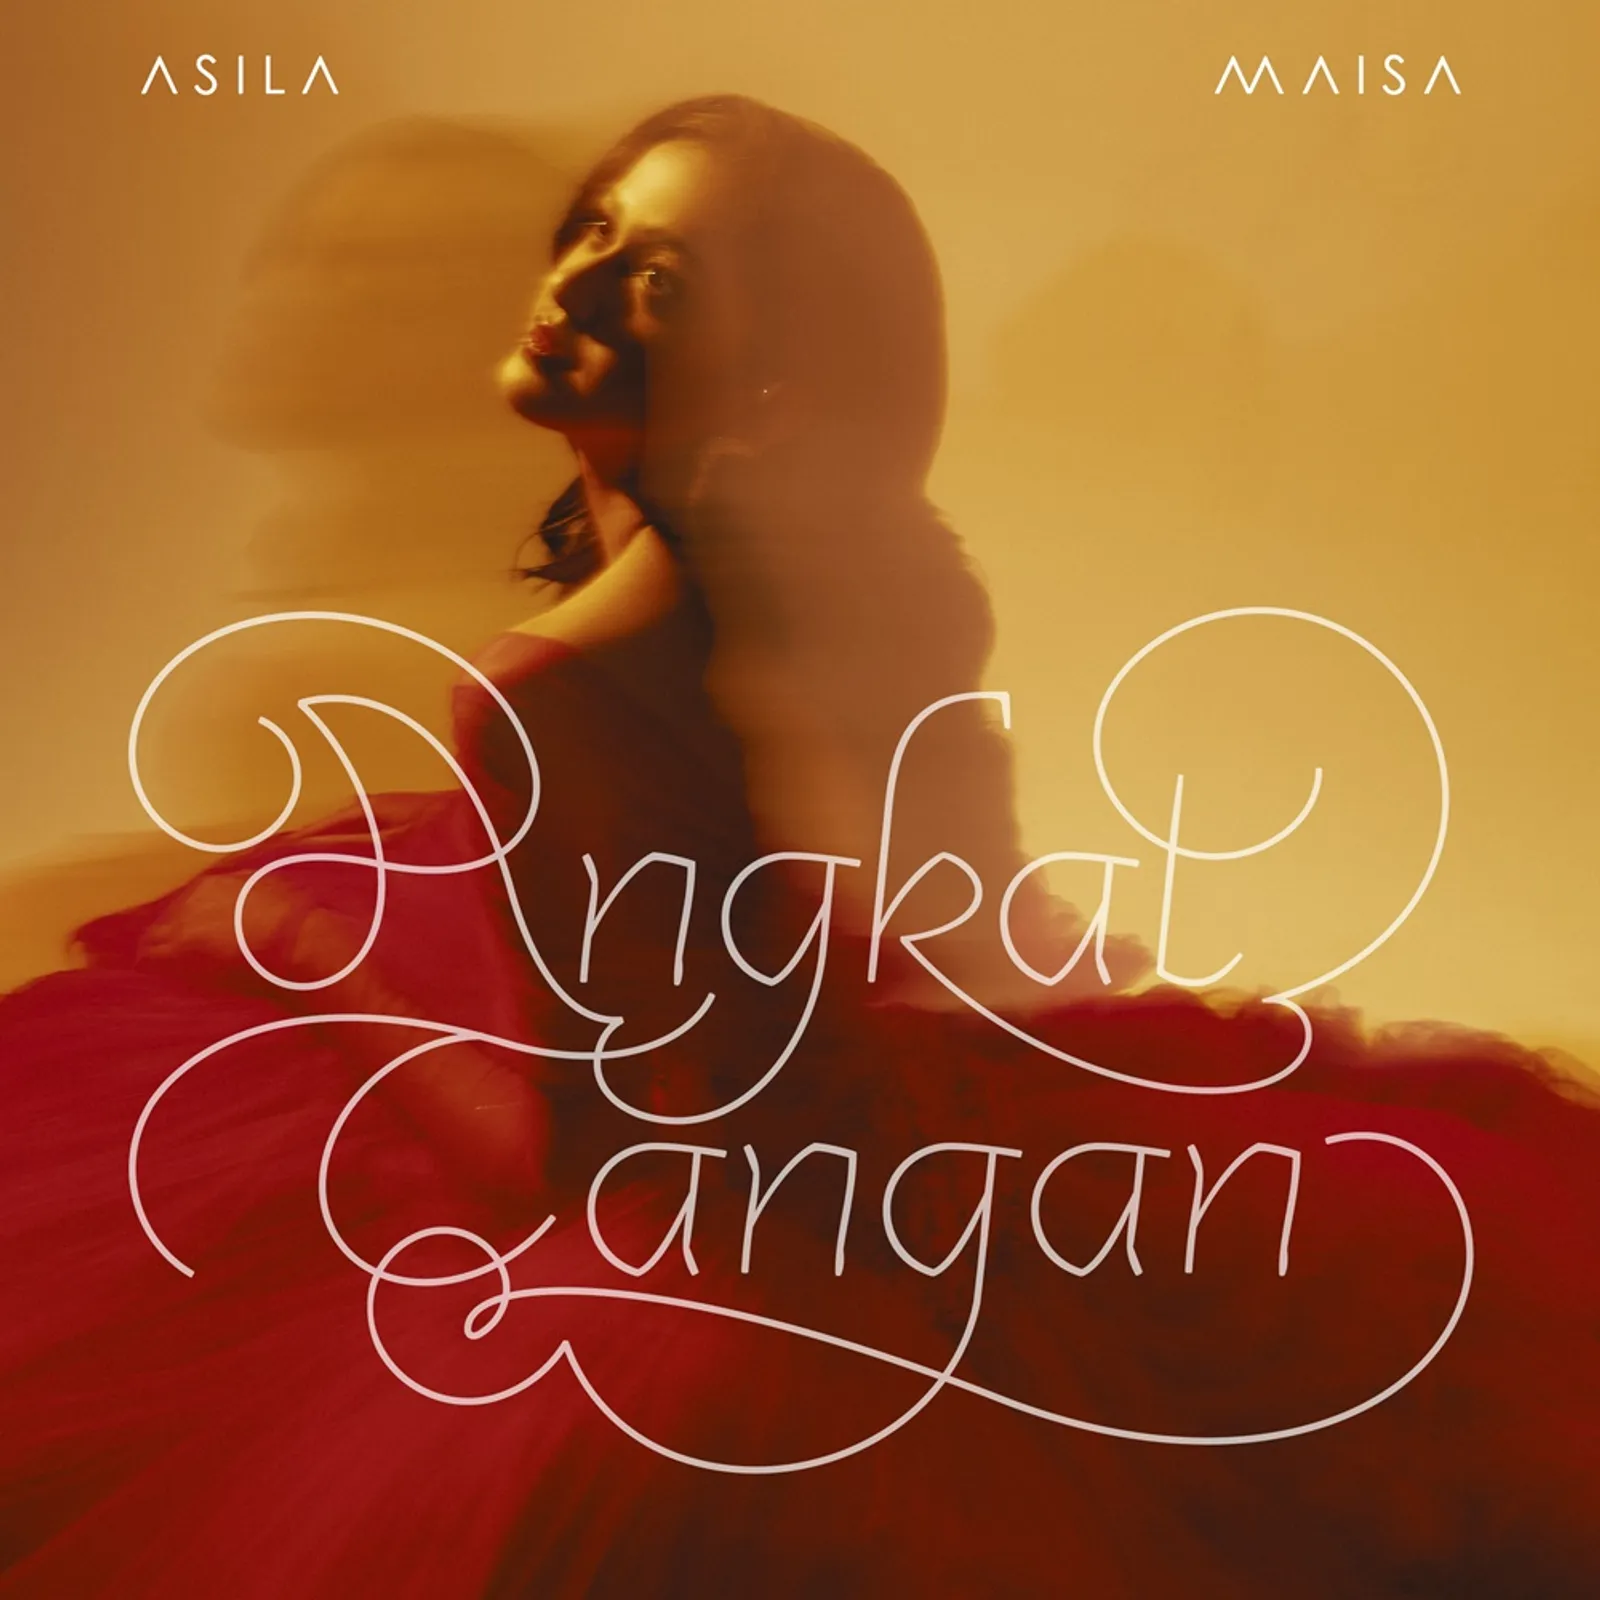 Lirik Lagu "Angkat Tangan" - Asila Maisa, Kisahkan Toxic Relationship